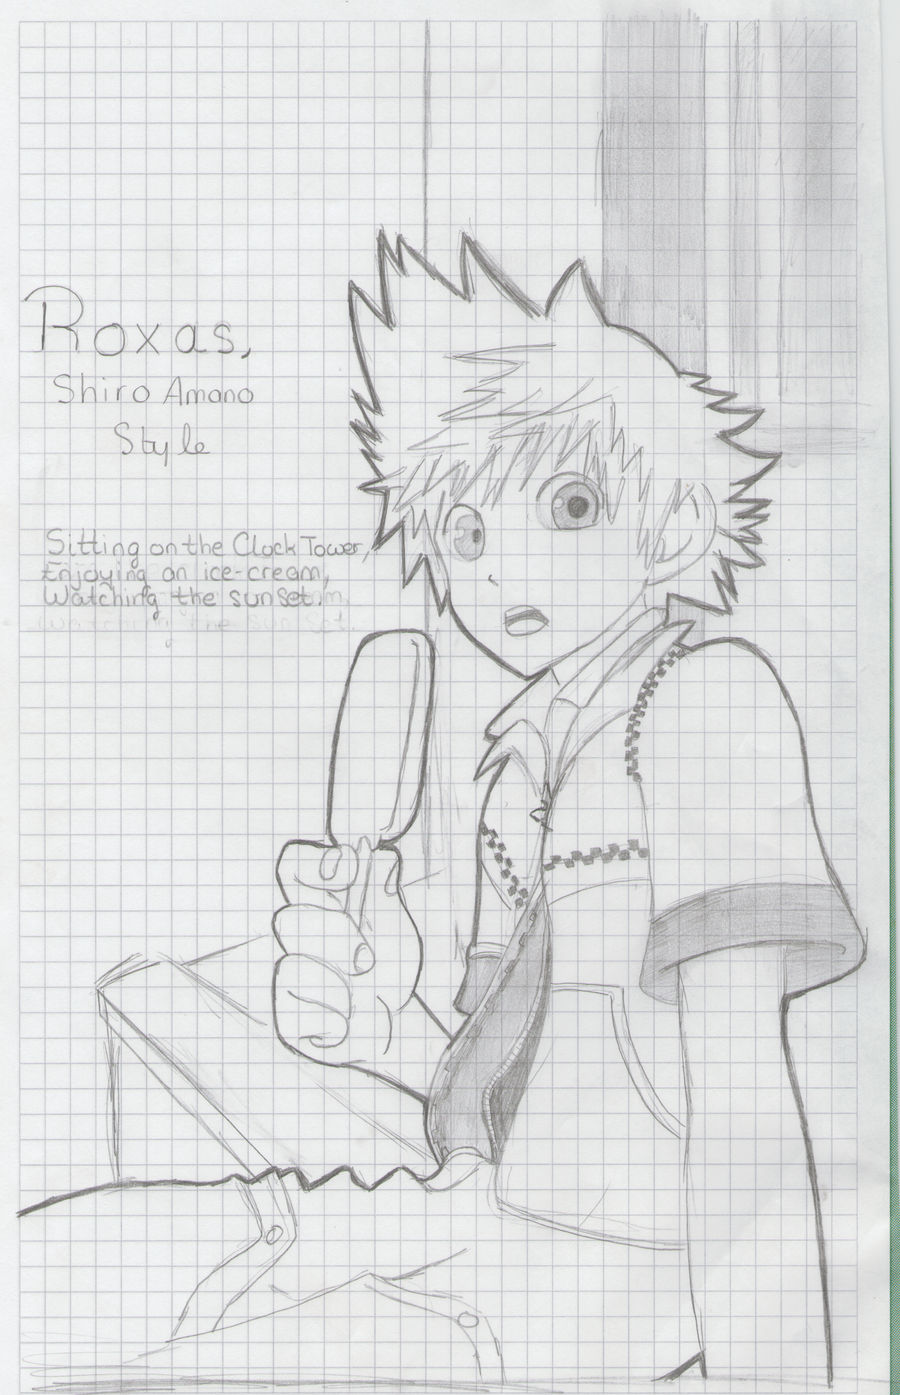 Roxas, Shiro Amano style